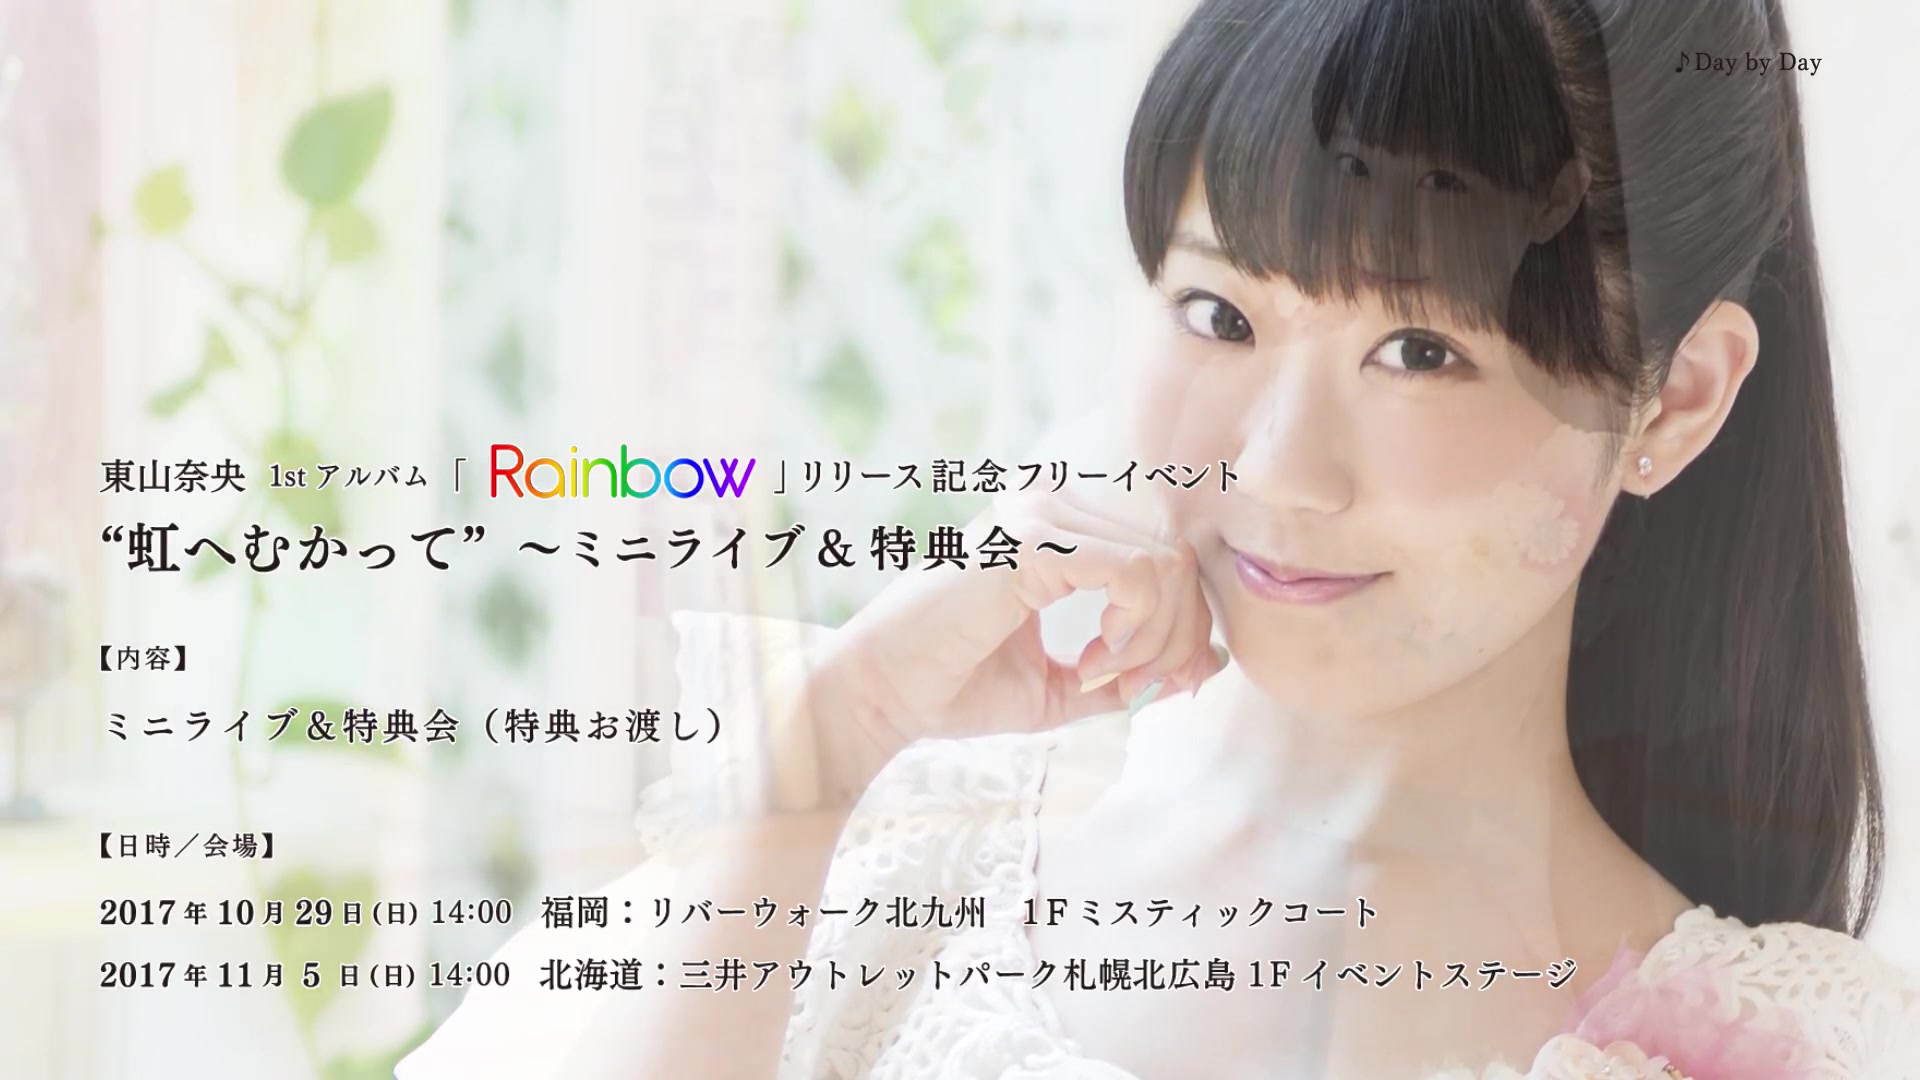 東山奈央 1stアルバム Rainbow クロスフェード動画 Vol 1 哔哩哔哩 つロ 干杯 Bilibili